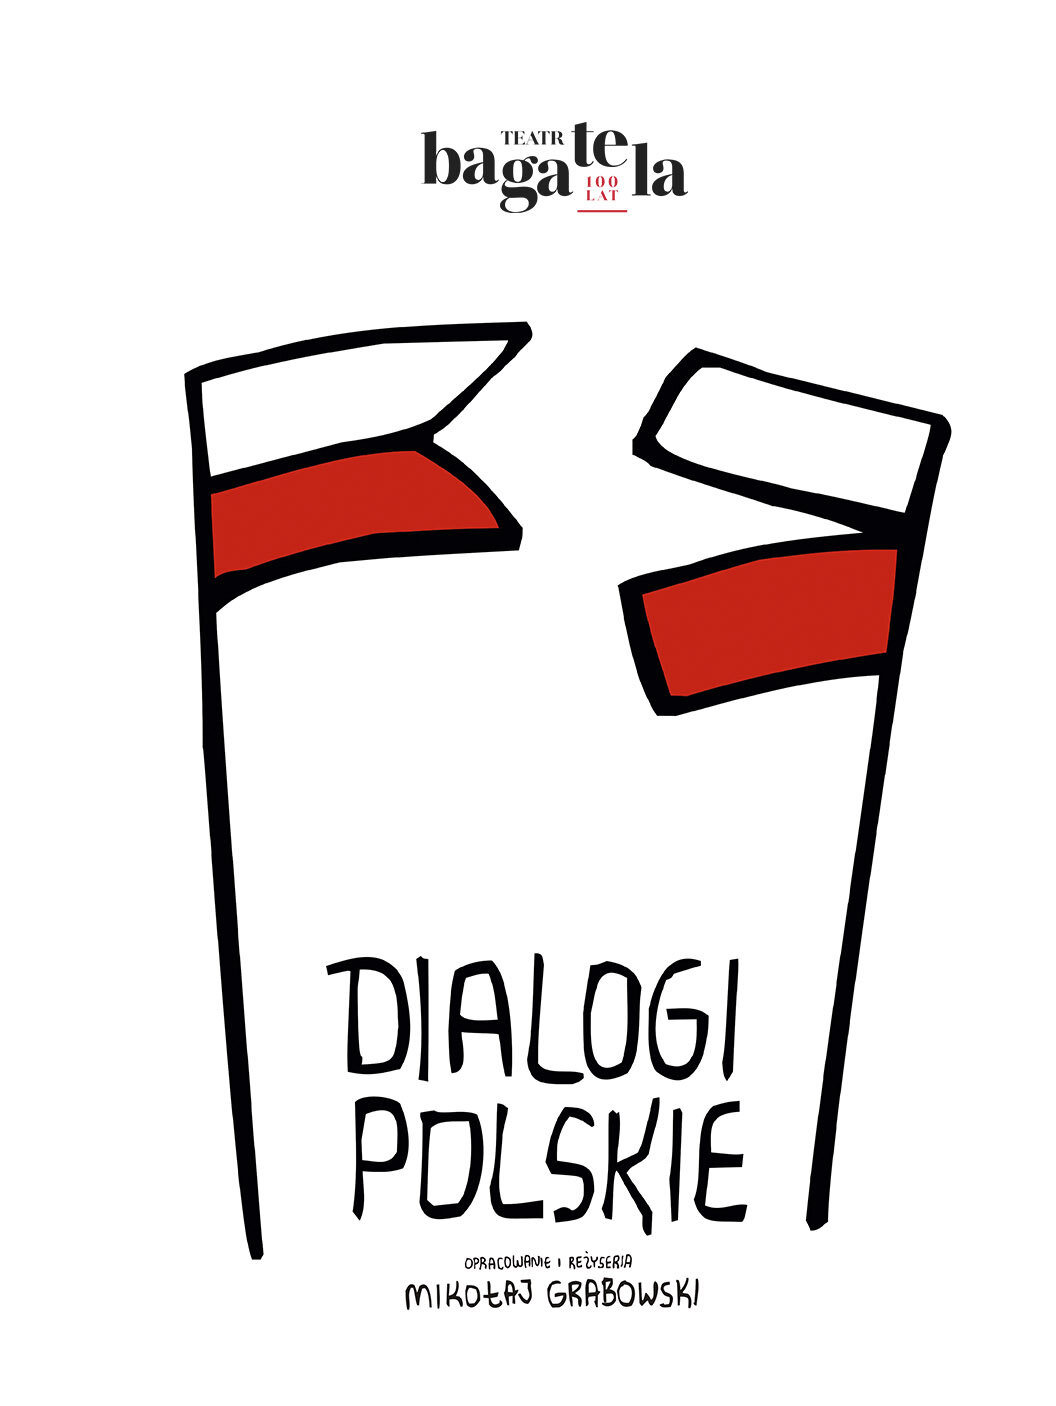 Dialogi polskie plakat